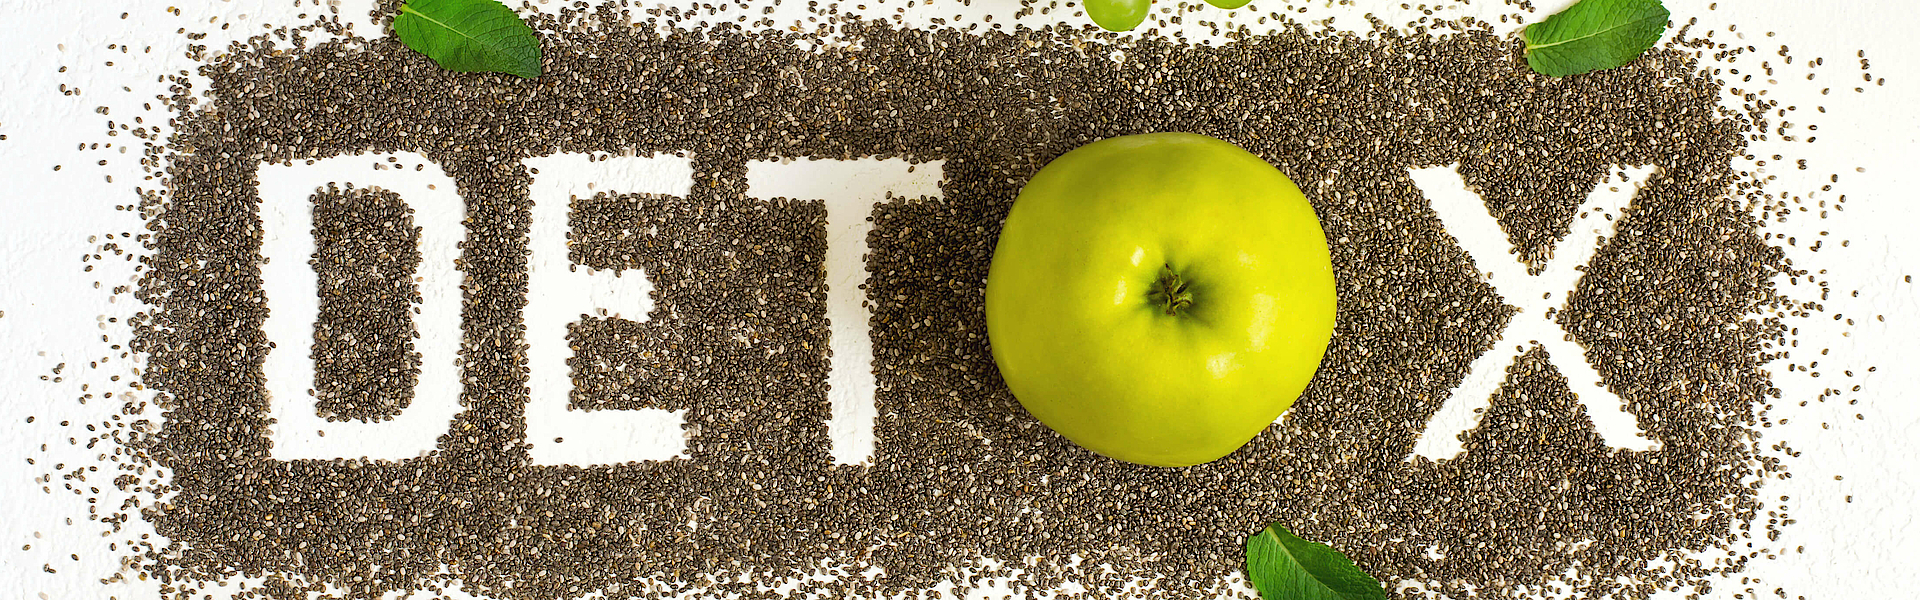 Das Wort Detox ist aus Samen gelegt. Drum herum liegen Äpfel, Trauben und andere Lebensmittel, die angeblich entgiftend wirken.